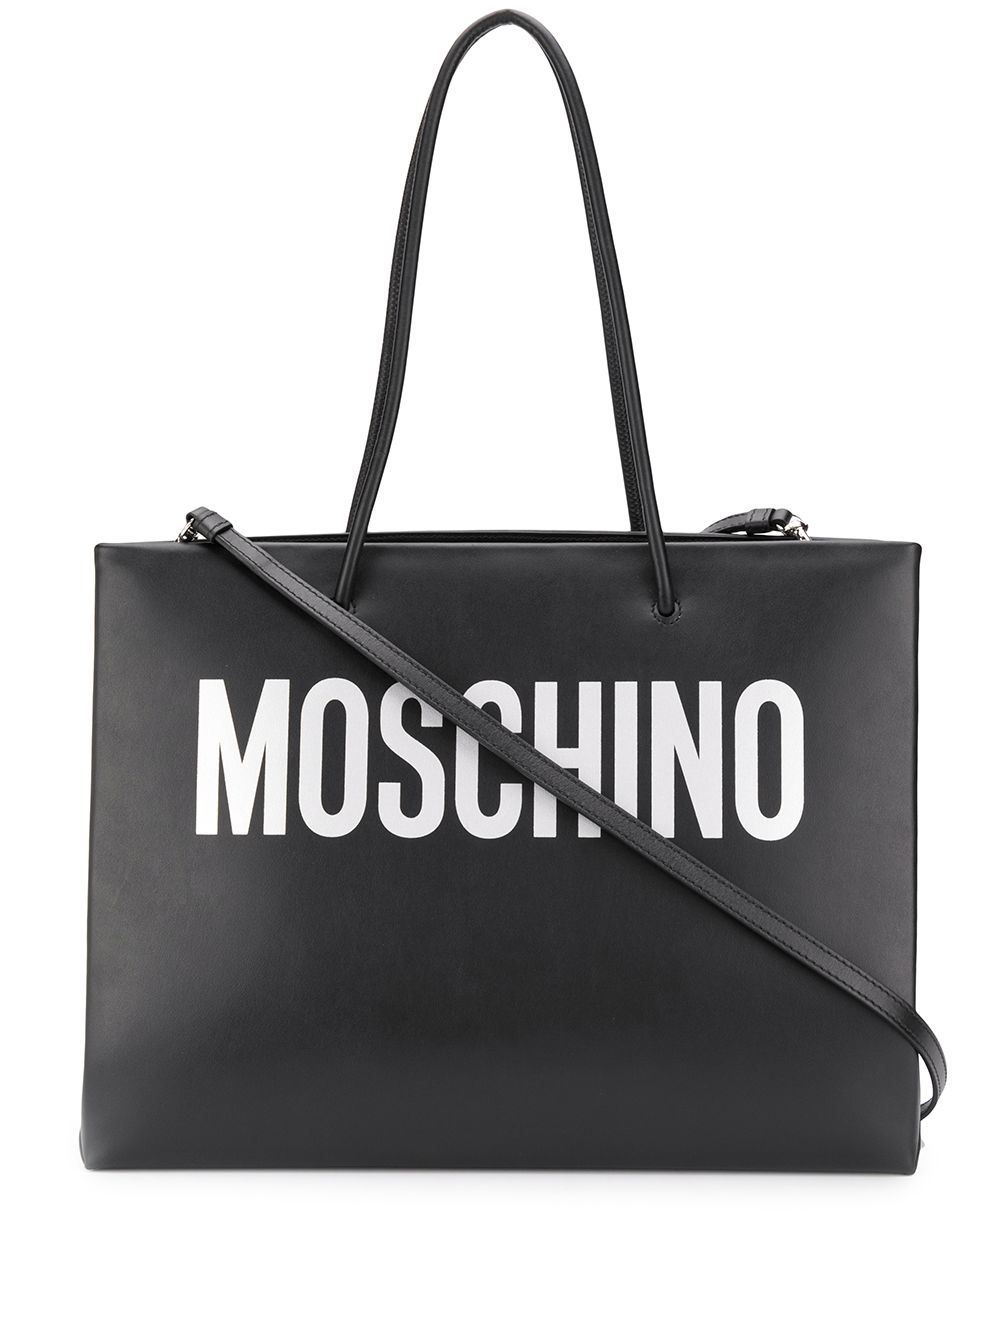 фото Moschino сумка-тоут с логотипом